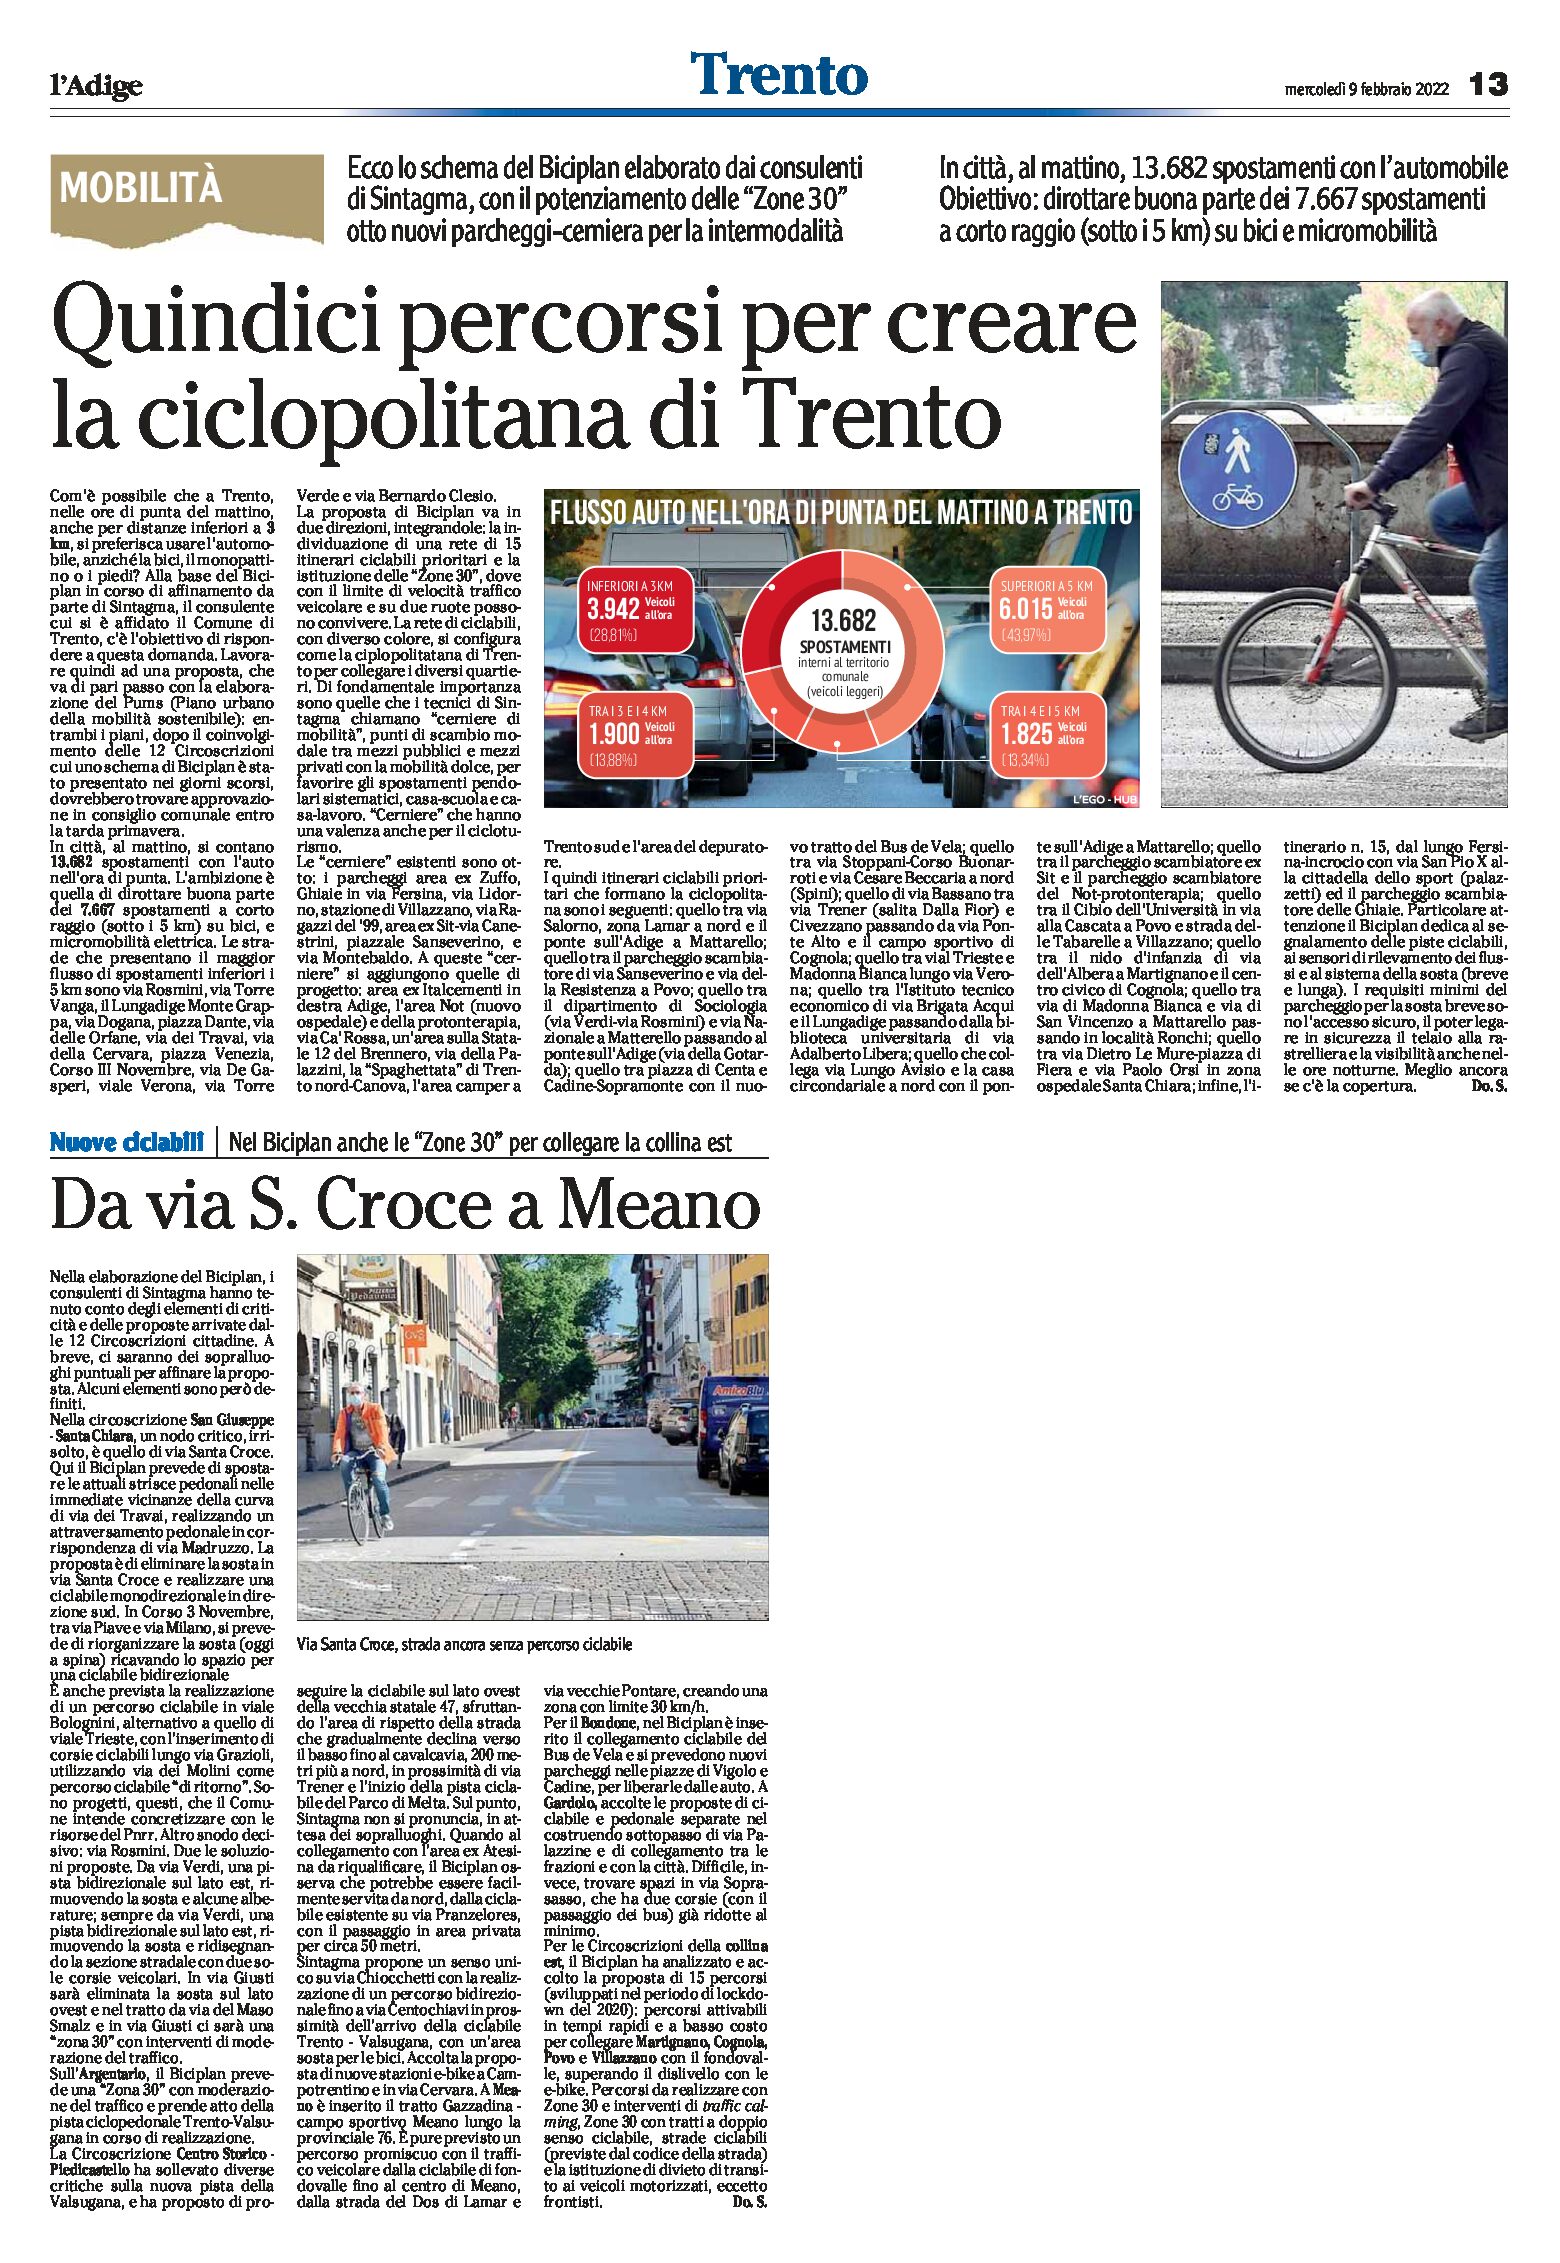 Mobilità: quindici percorsi per creare la ciclopolitana di Trento